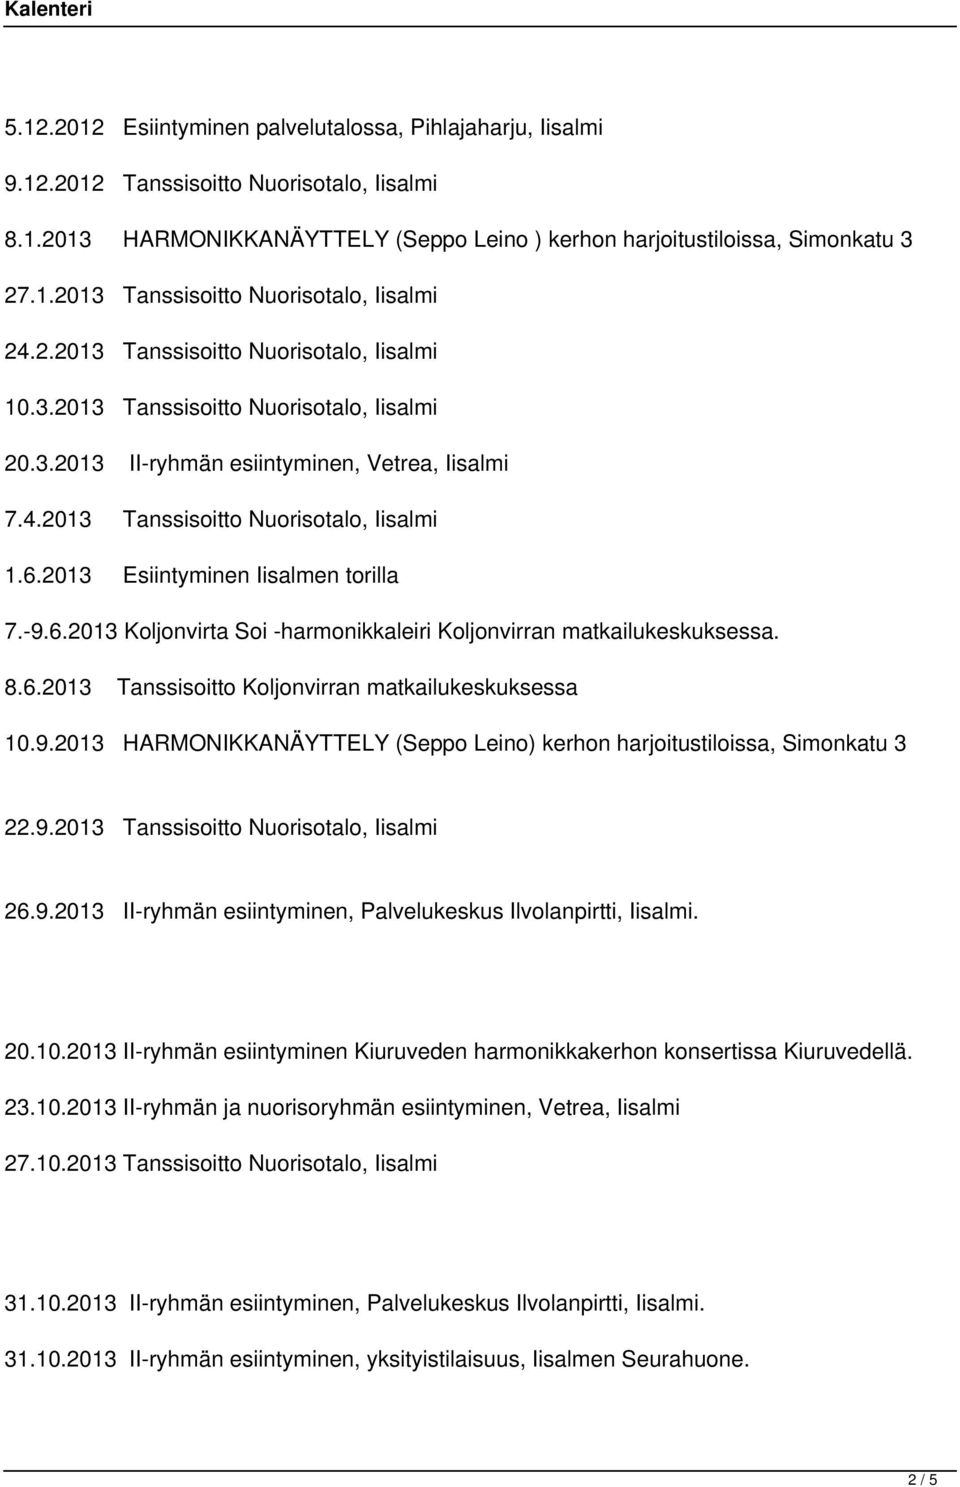 2013 Esiintyminen Iisalmen torilla 7.-9.6.2013 Koljonvirta Soi -harmonikkaleiri Koljonvirran matkailukeskuksessa. 8.6.2013 Tanssisoitto Koljonvirran matkailukeskuksessa 10.9.2013 HARMONIKKANÄYTTELY (Seppo Leino) kerhon harjoitustiloissa, Simonkatu 3 22.